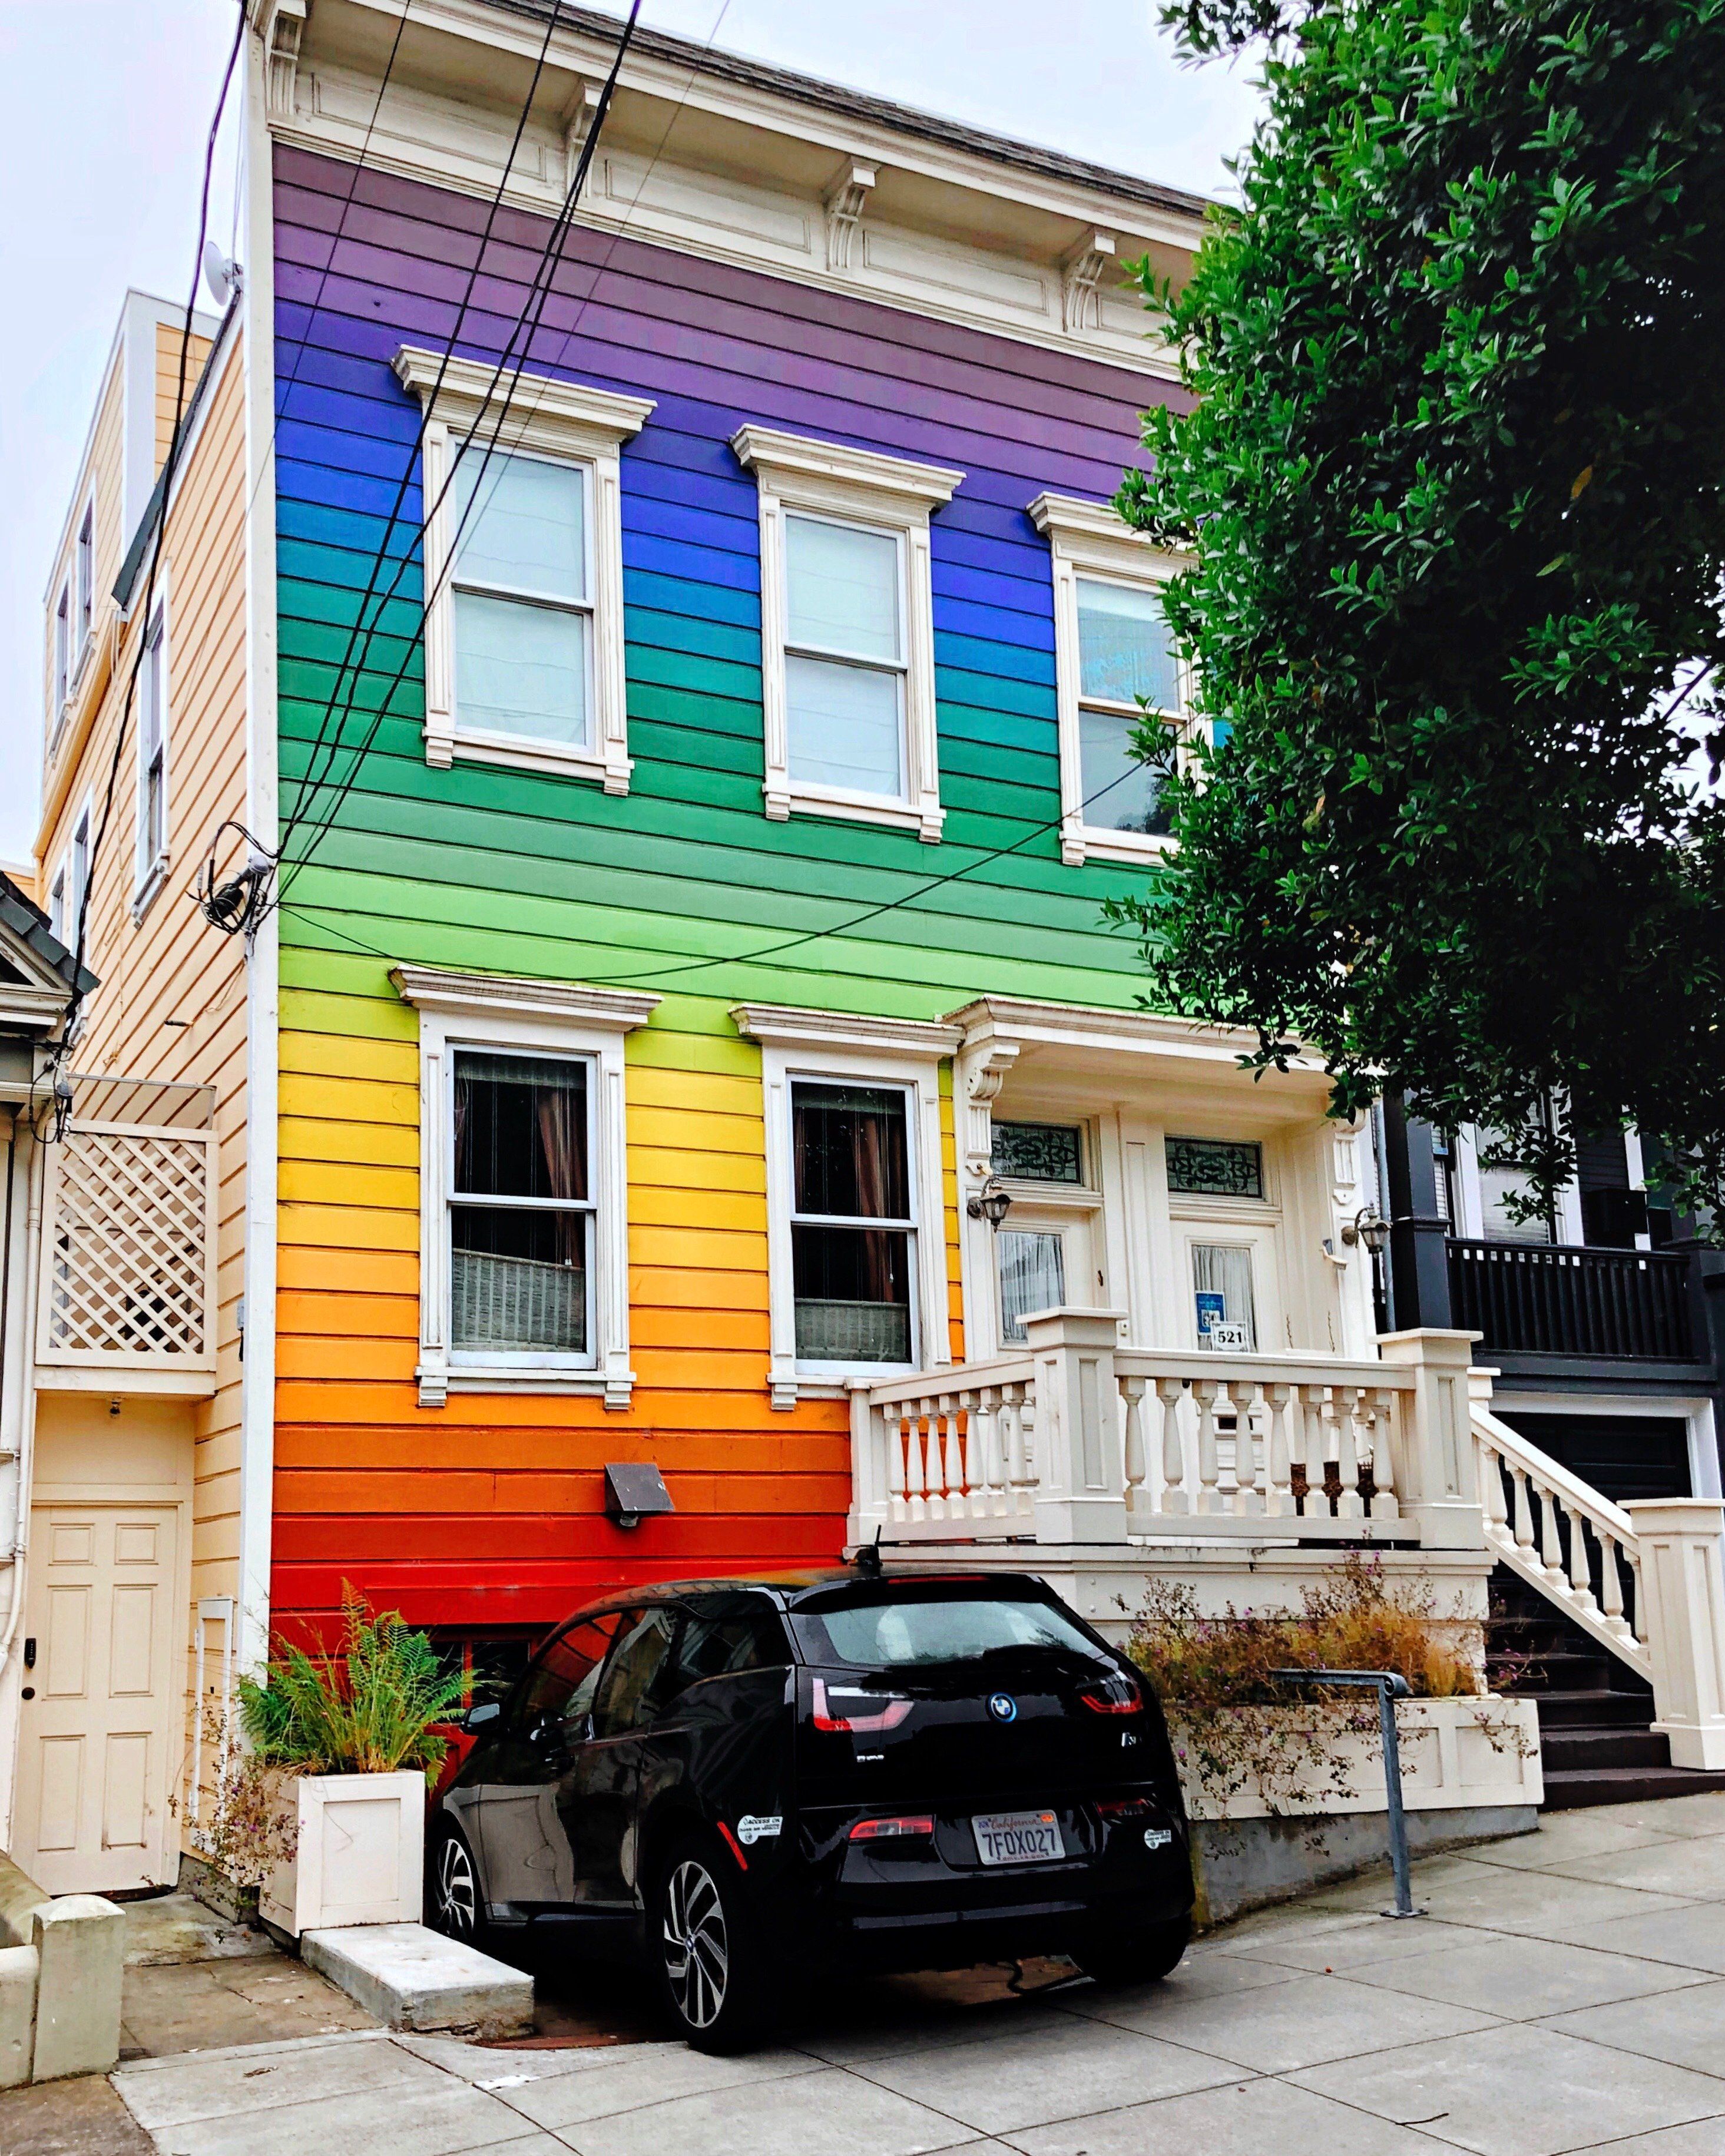 The Rainbow Houses of San Francisco